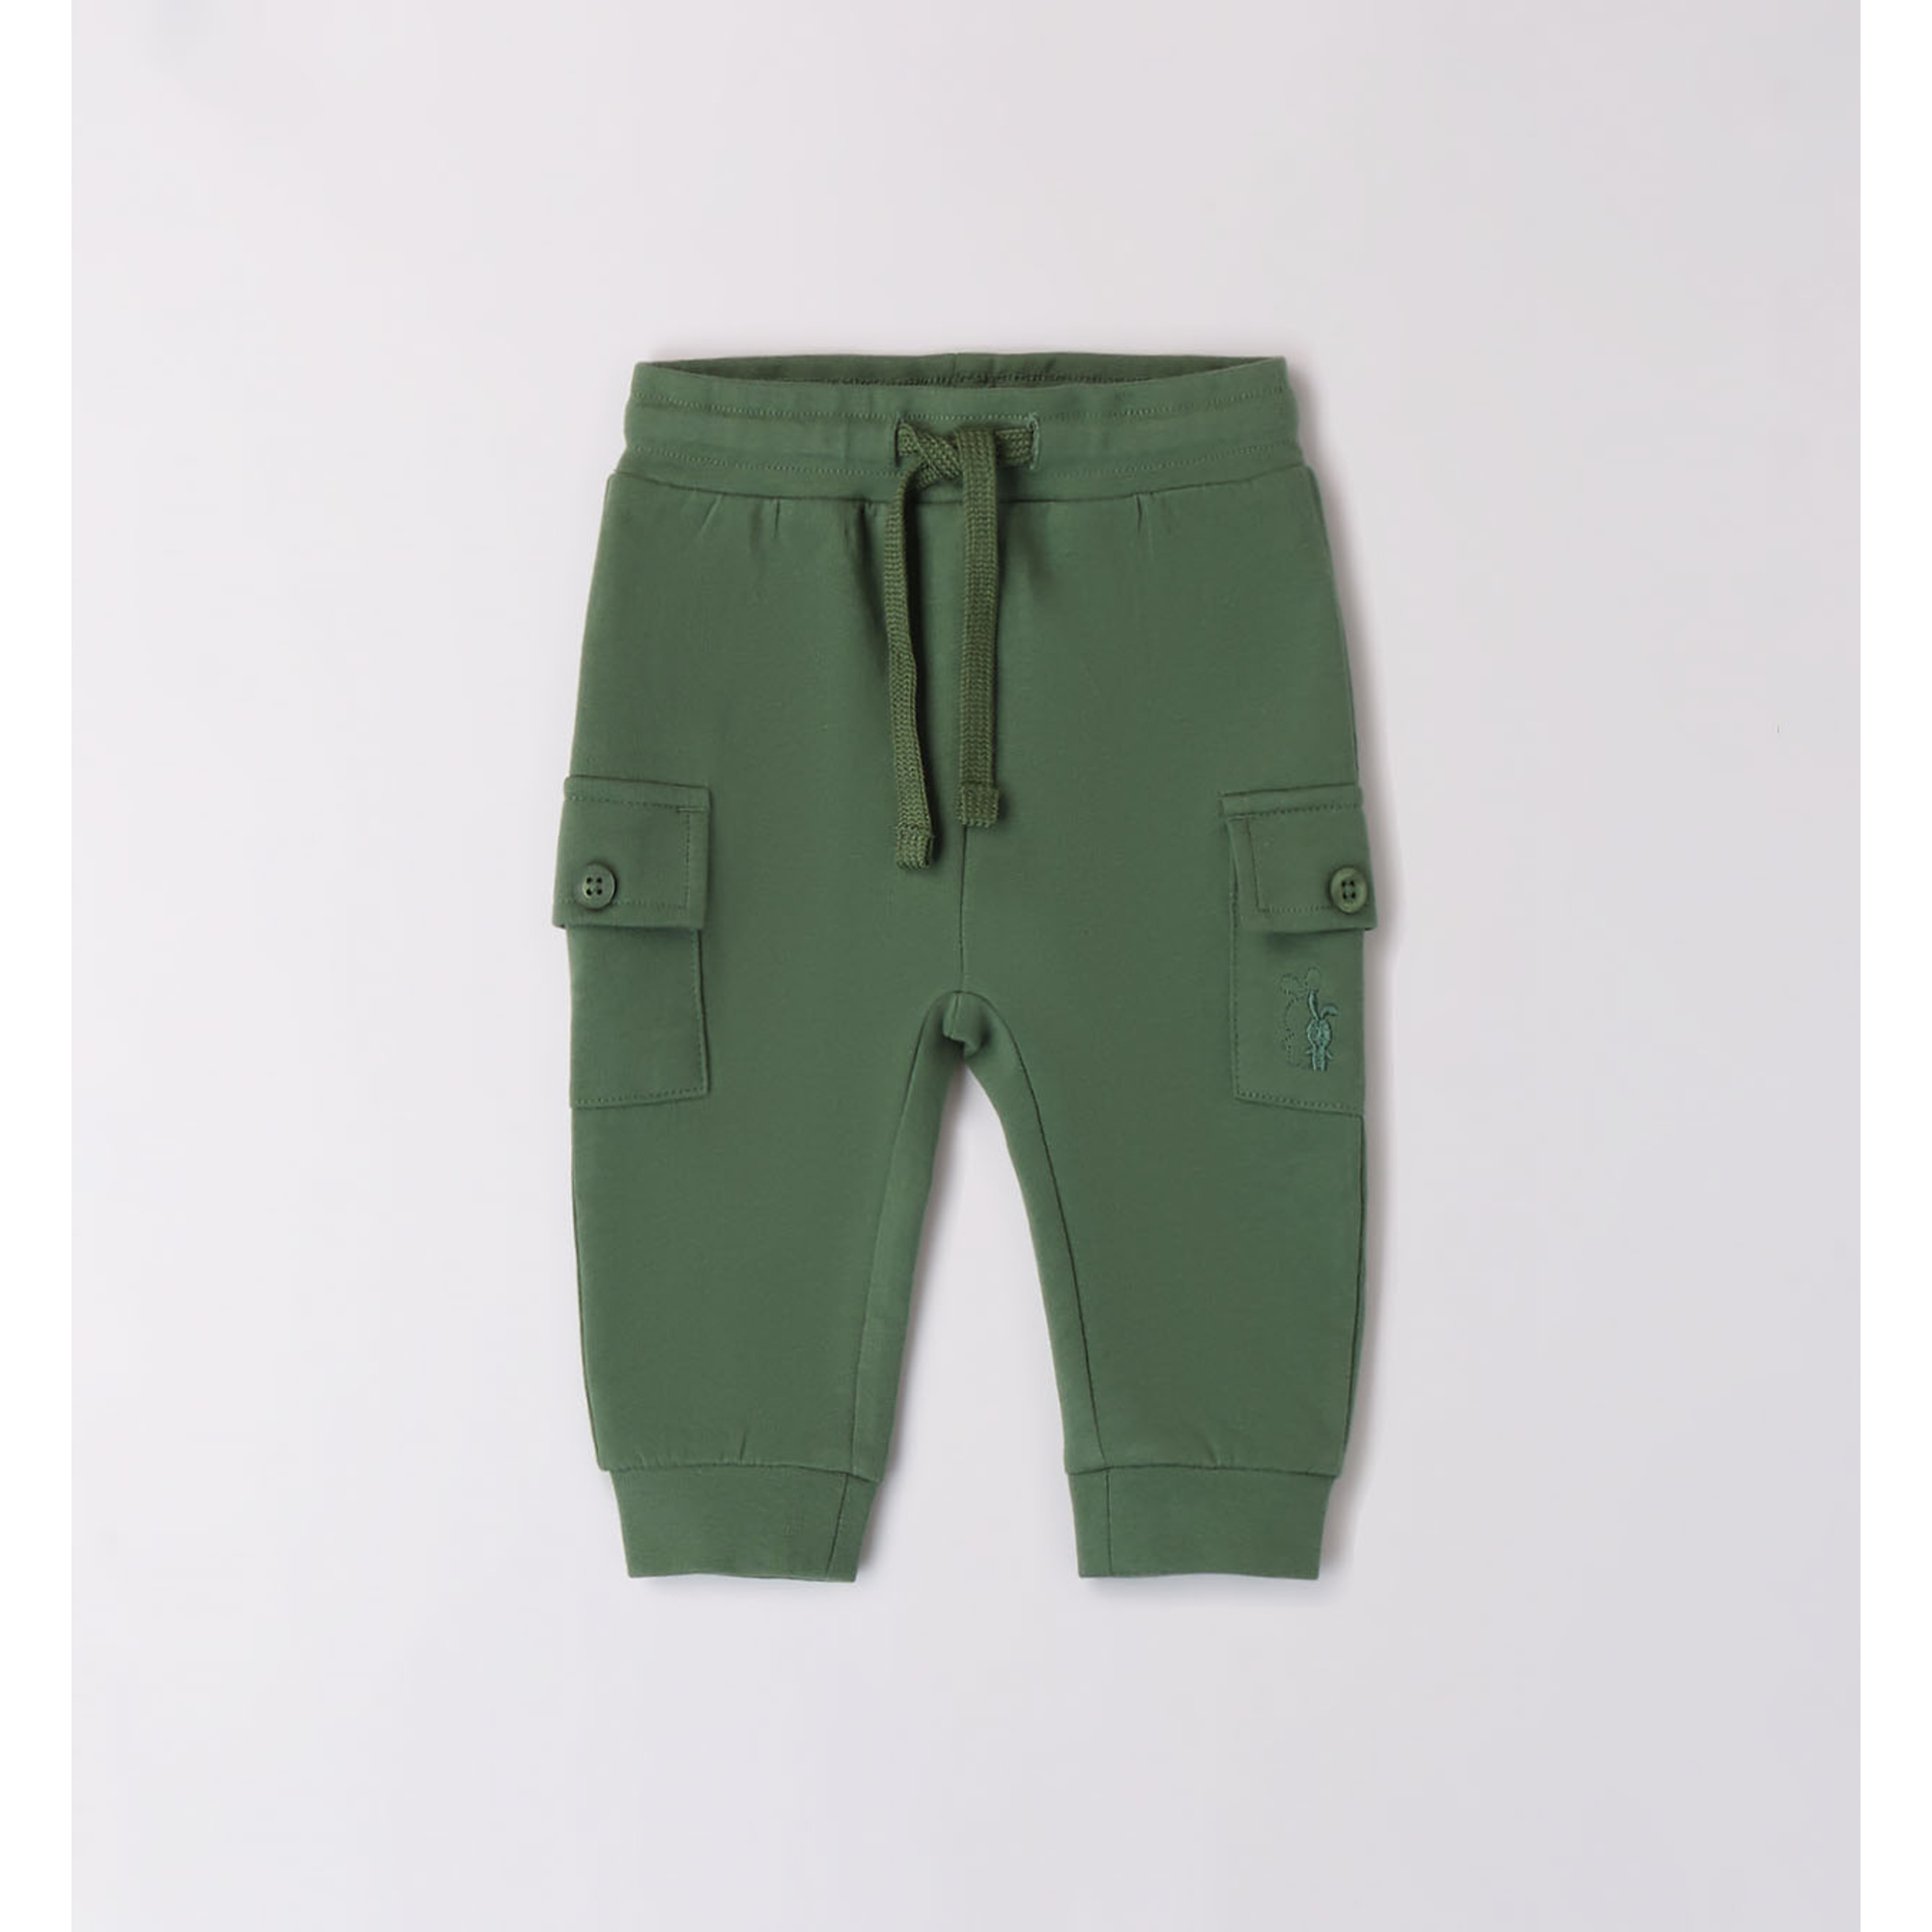 Ido pantalone felpa verde con tasconi - Dodipetto